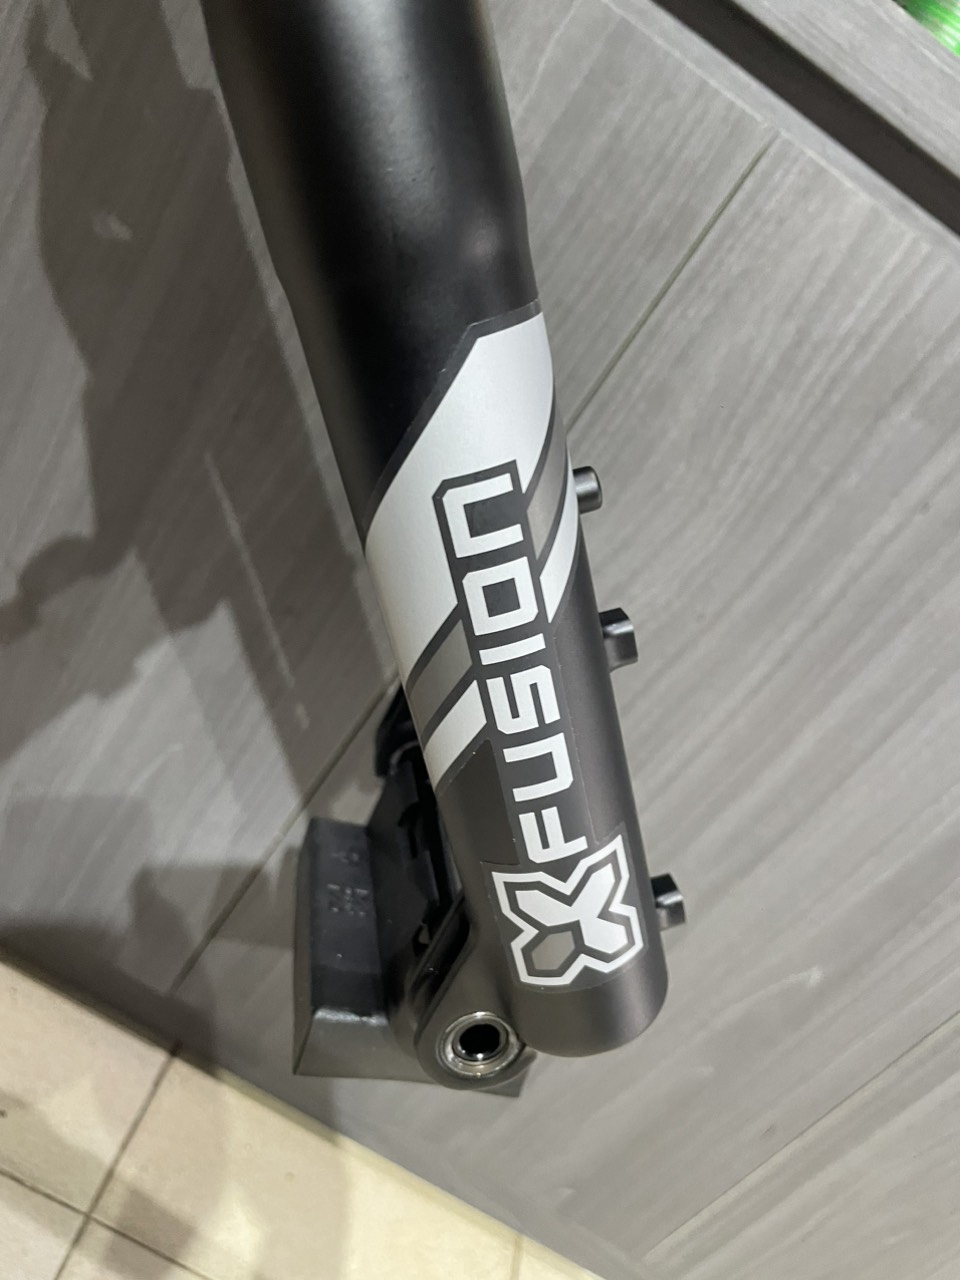 Phuộc nhún hơi xe đạp X-Fusion RC32 27.5inch Boost 15x110 Có Remote